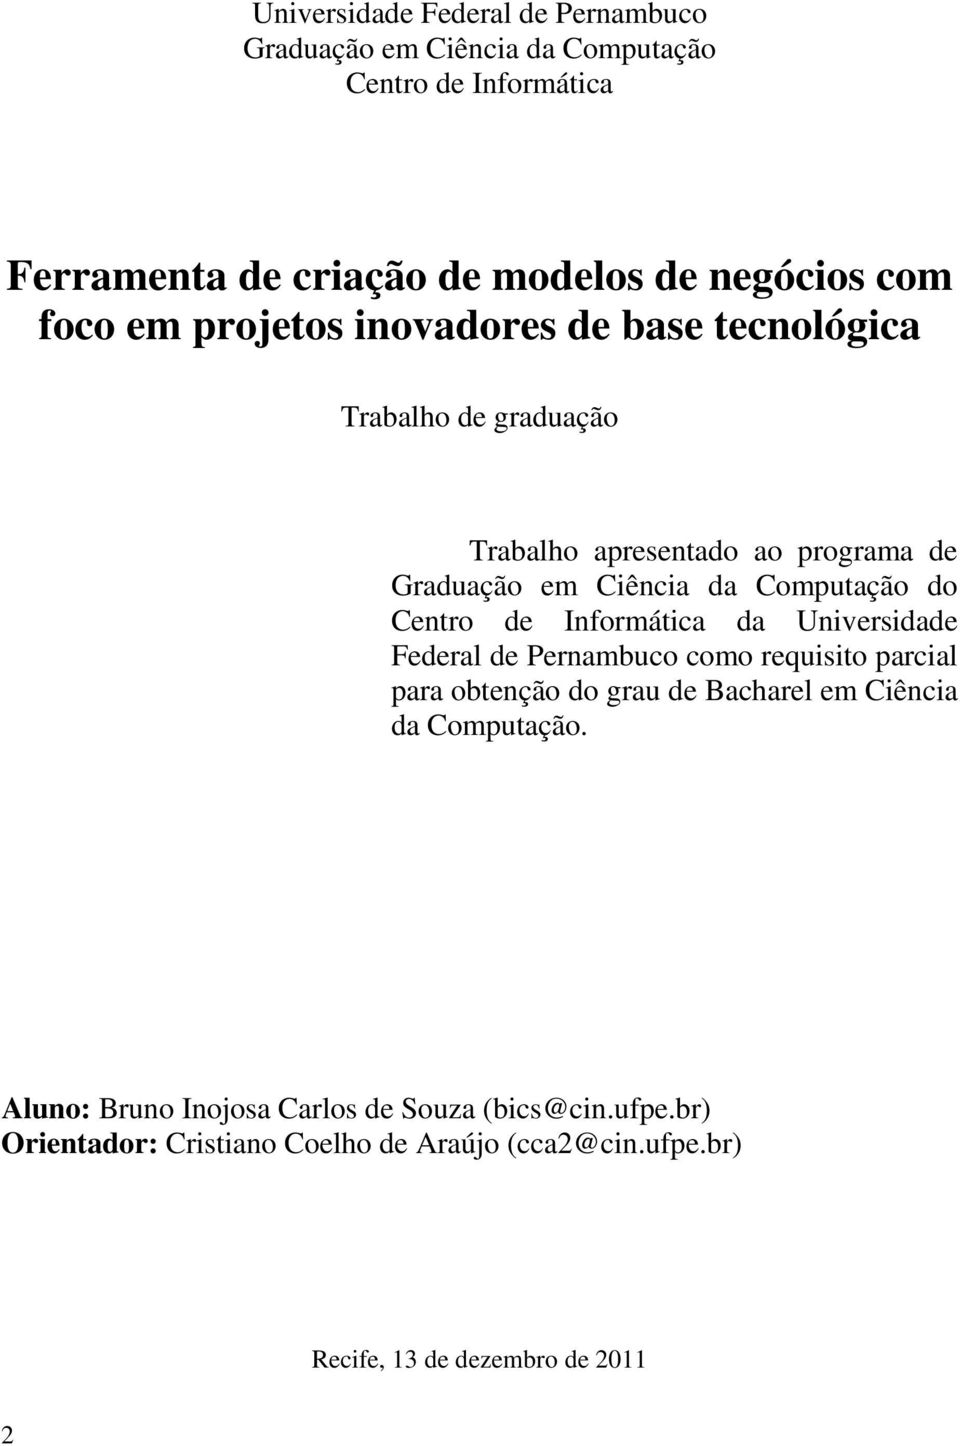 Centro de Informática da Universidade Federal de Pernambuco como requisito parcial para obtenção do grau de Bacharel em Ciência da Computação.